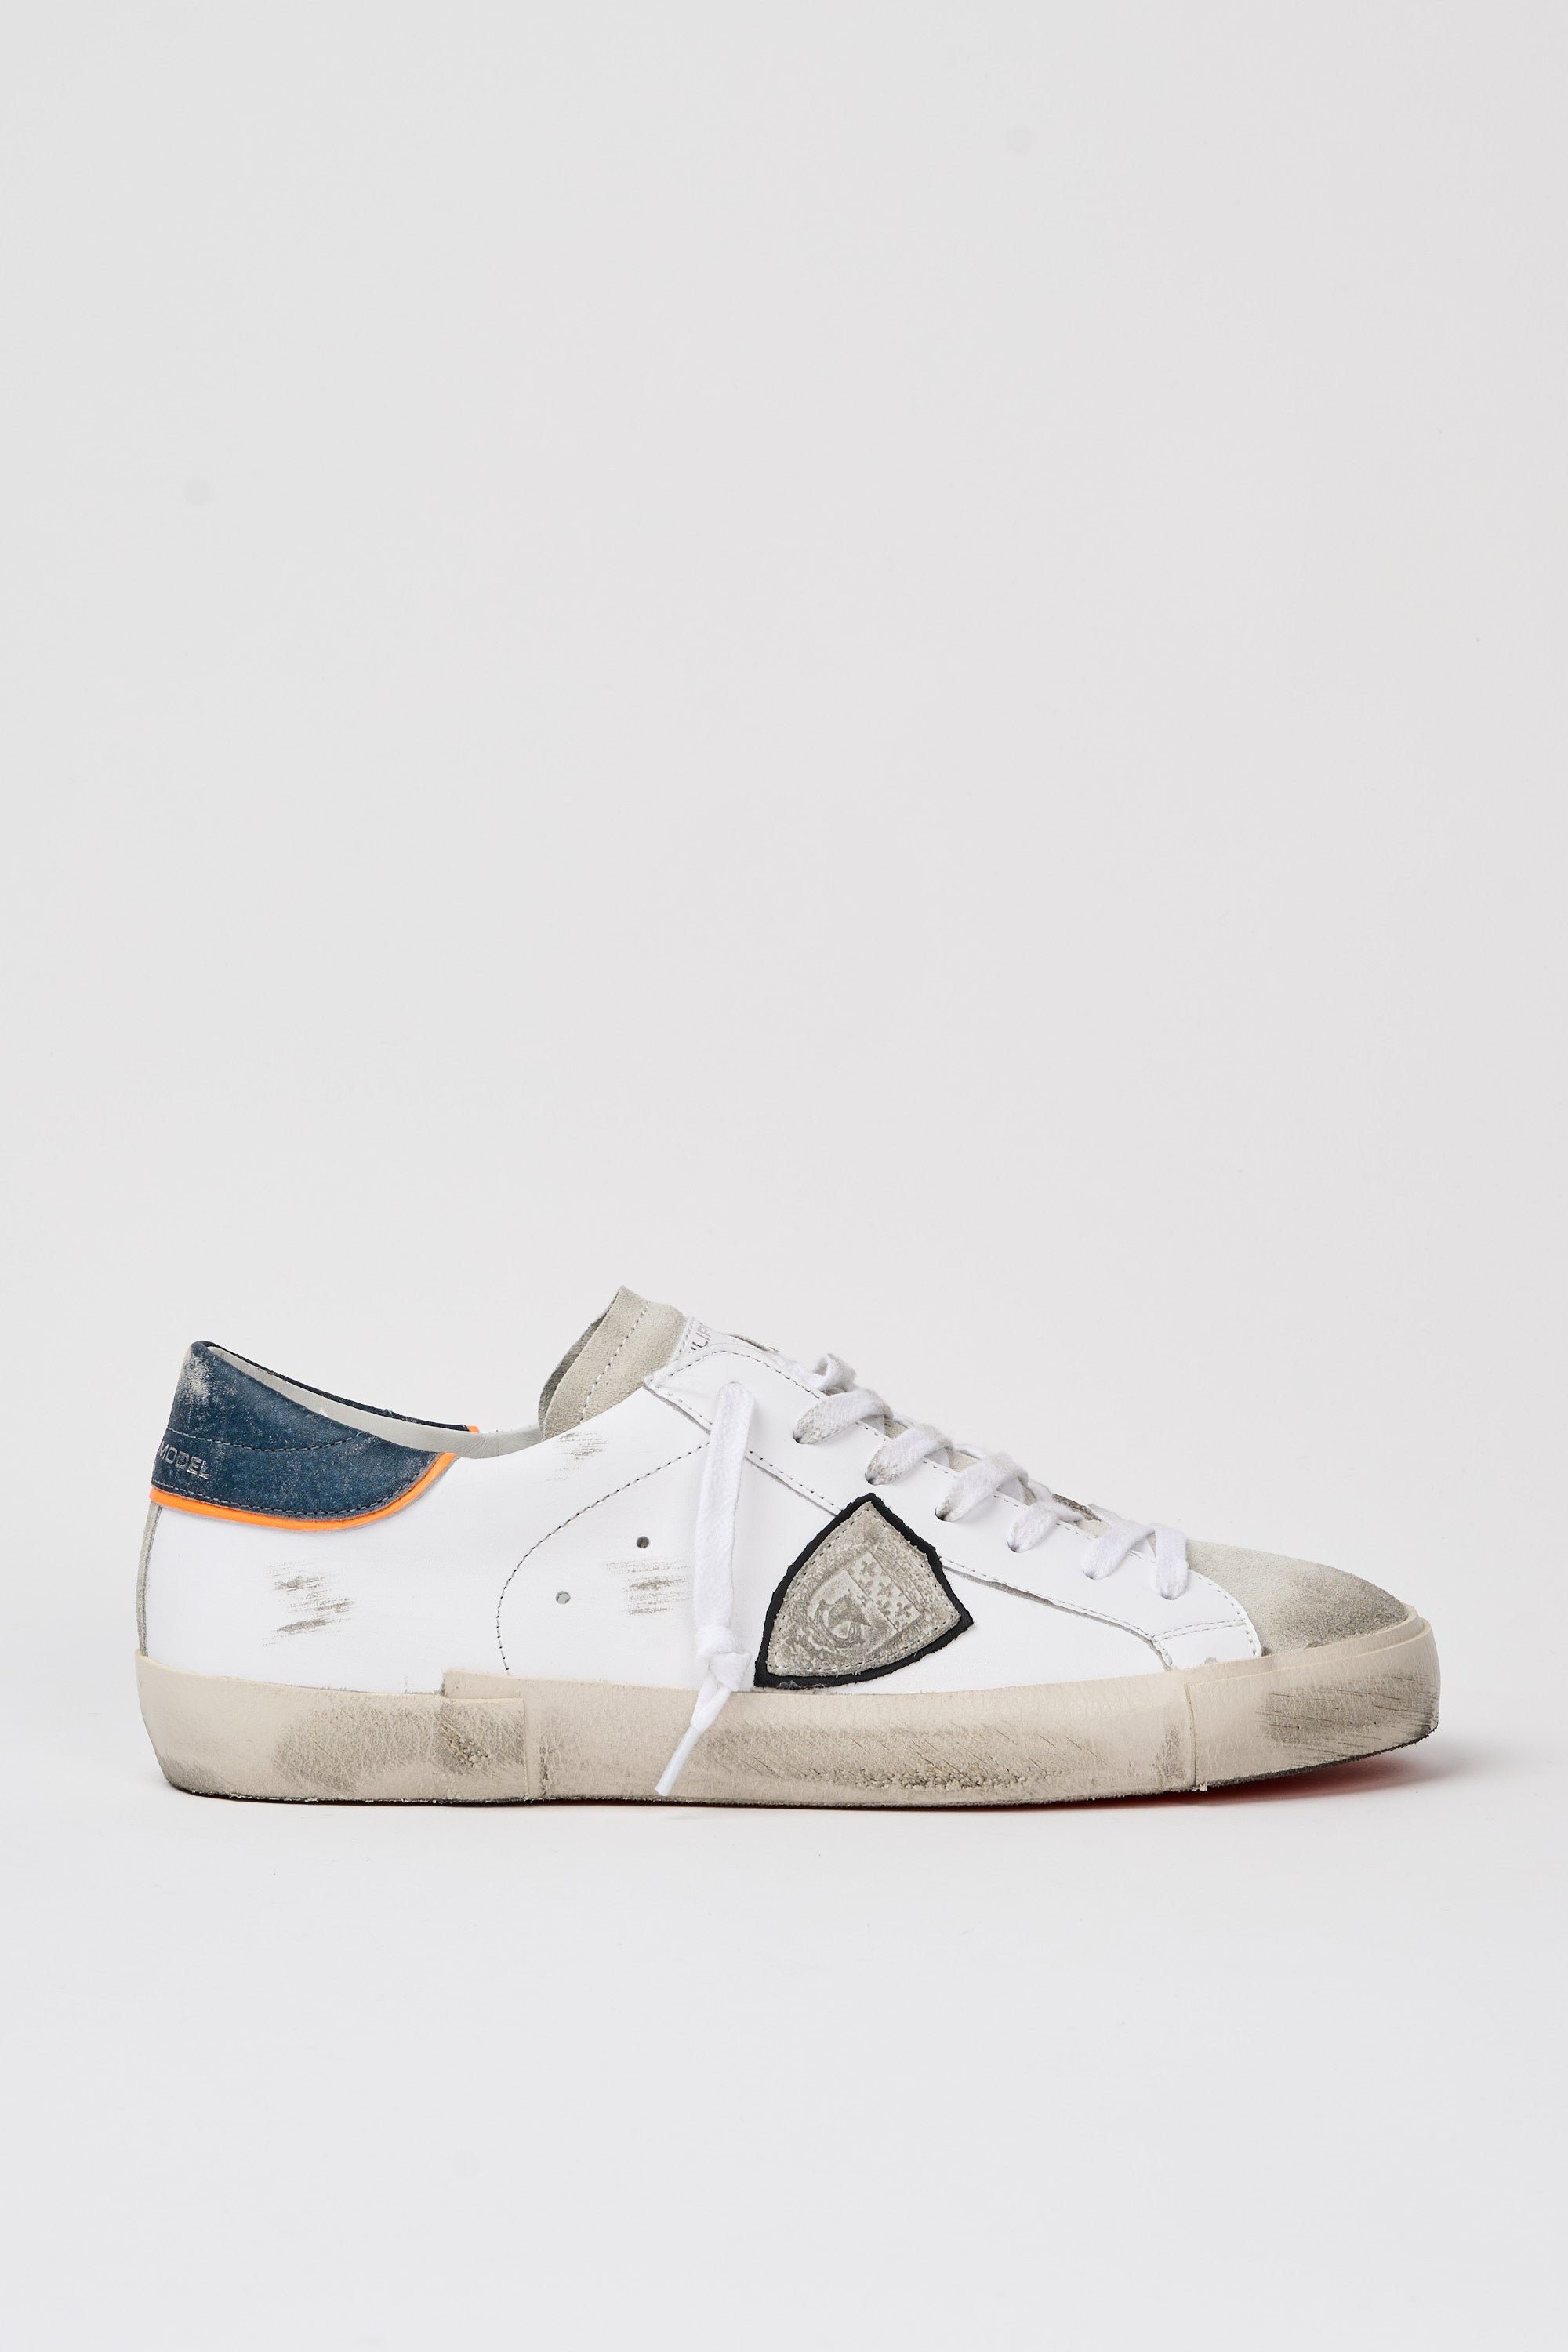 Philippe Model Sneaker Prsx Leather/Suede White/Denim-1